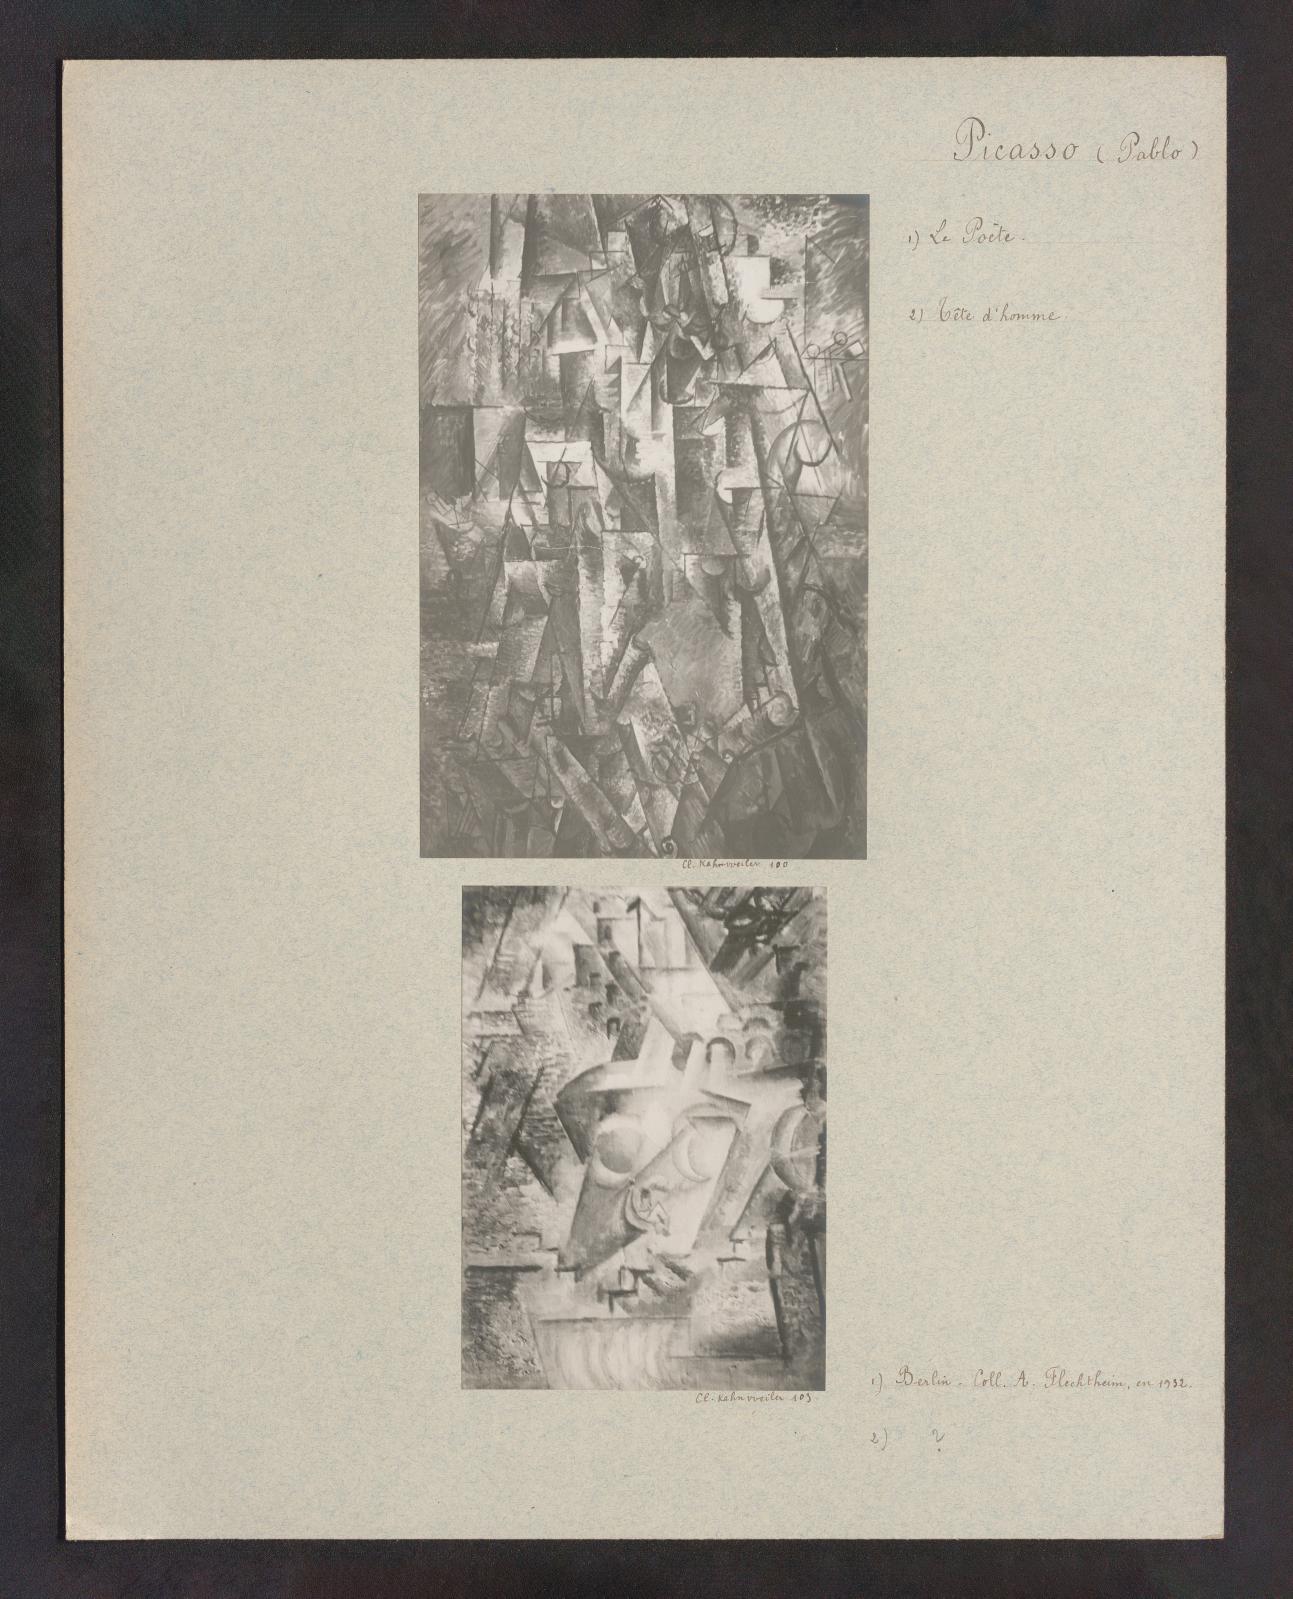 Pablo Picasso (1881-1973), Le Poète et Tête d’homme. Clichés Kahnweiler nos 100 et 103, photographies contrecollées sur carton, 46 x 36 cm